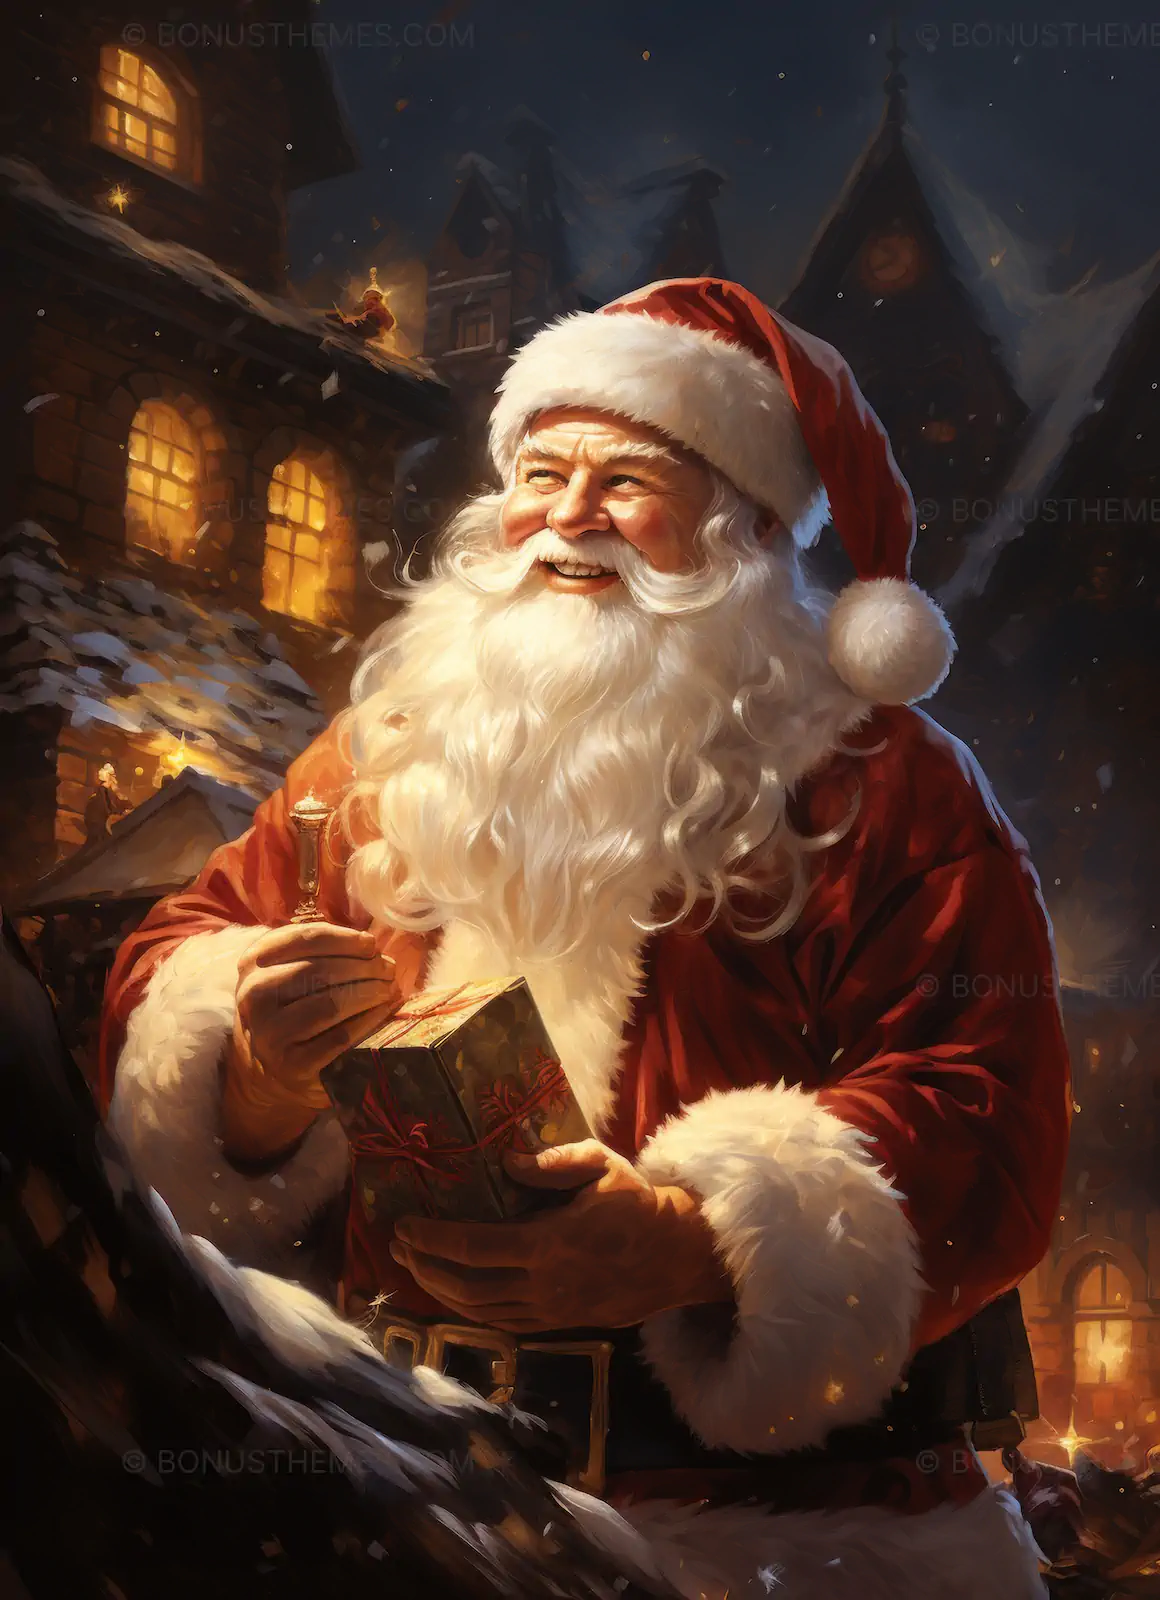 Santa gives Christmas presents